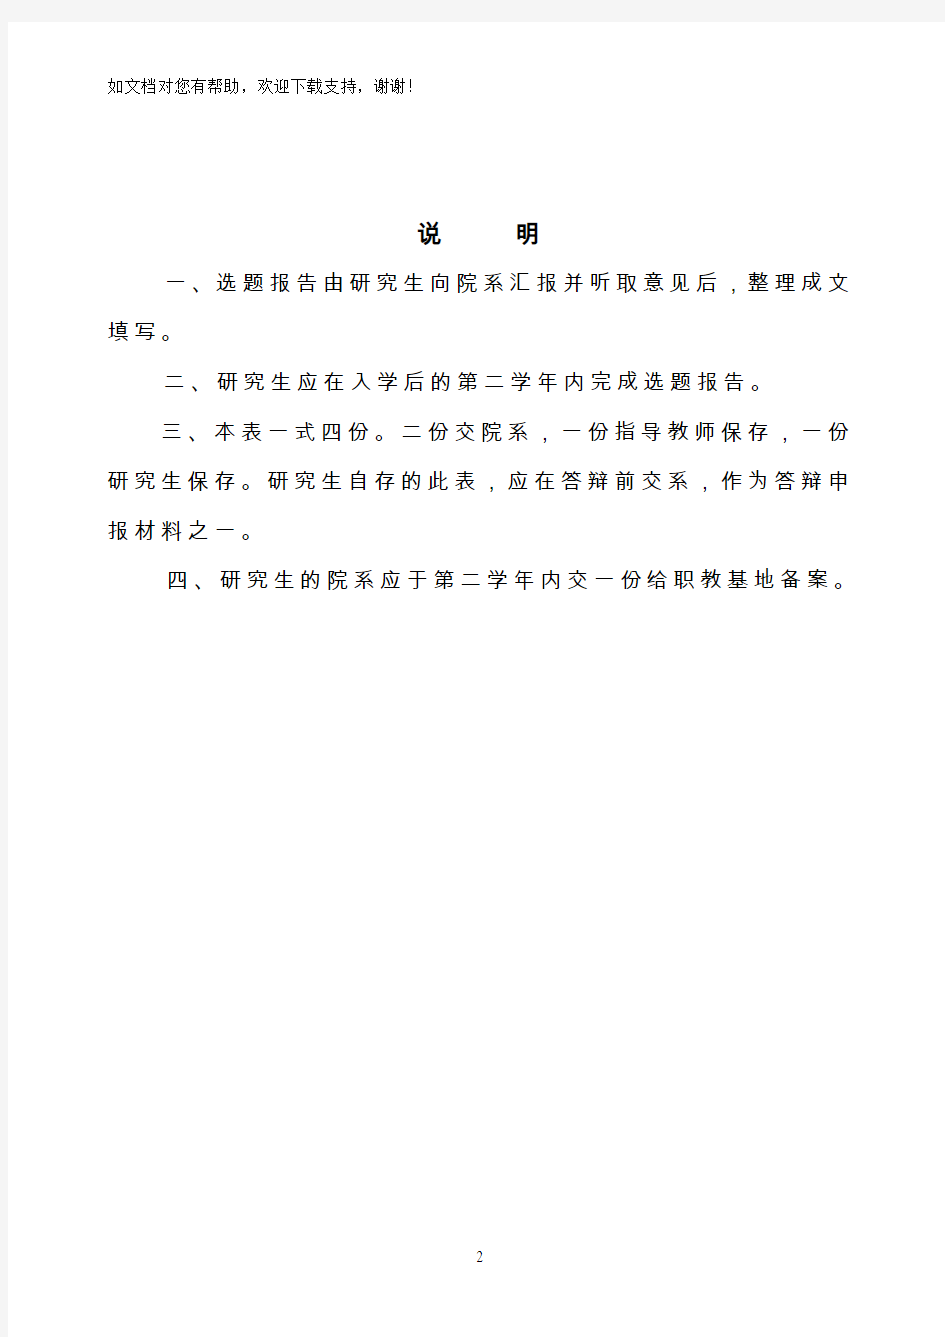 重庆师范大学在职硕士开题报告表